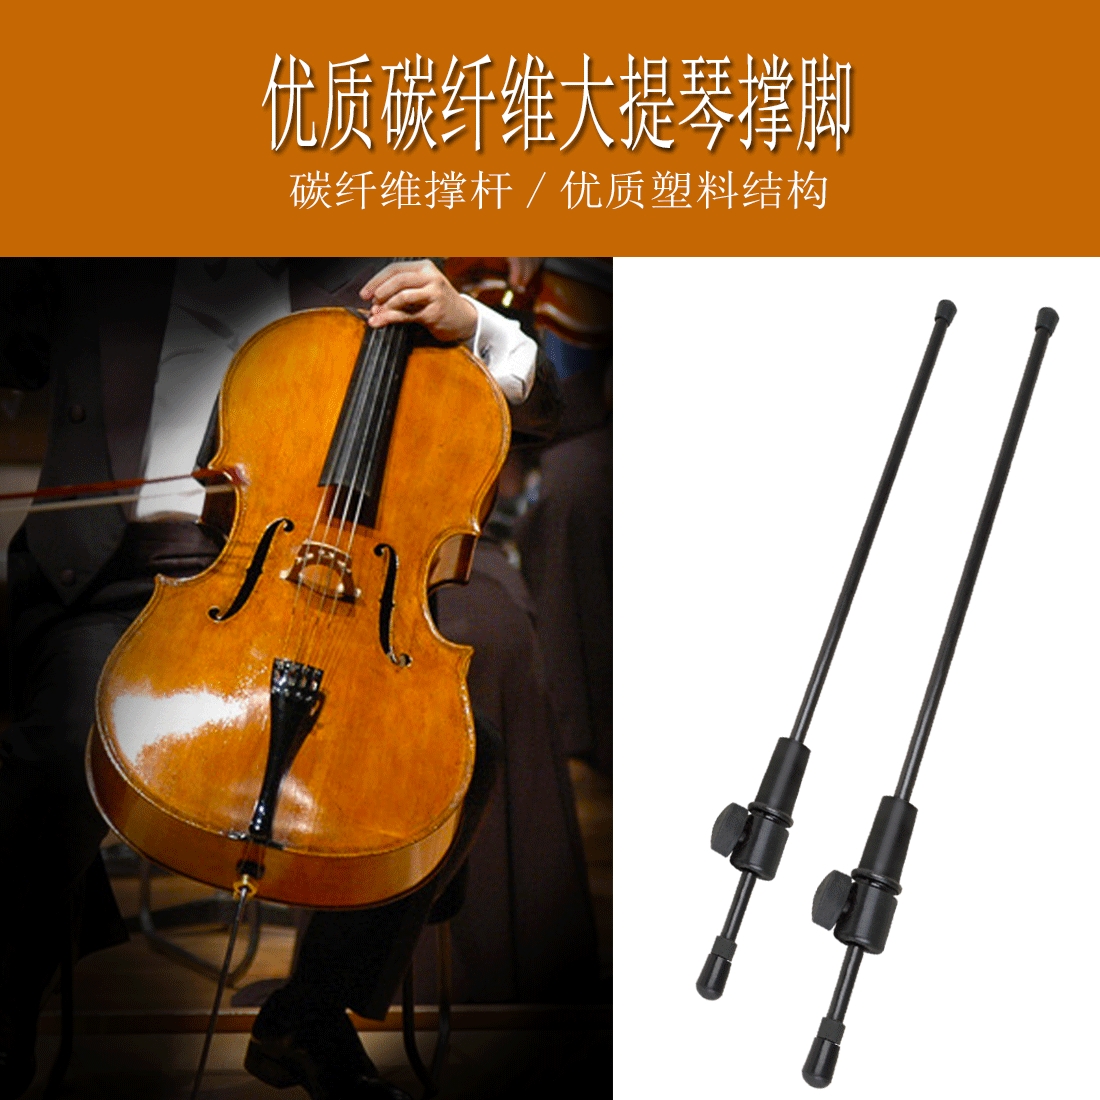 大提琴尾柱脚撑防滑碳纤维天然乌木撑脚架可调节大提琴支撑杆